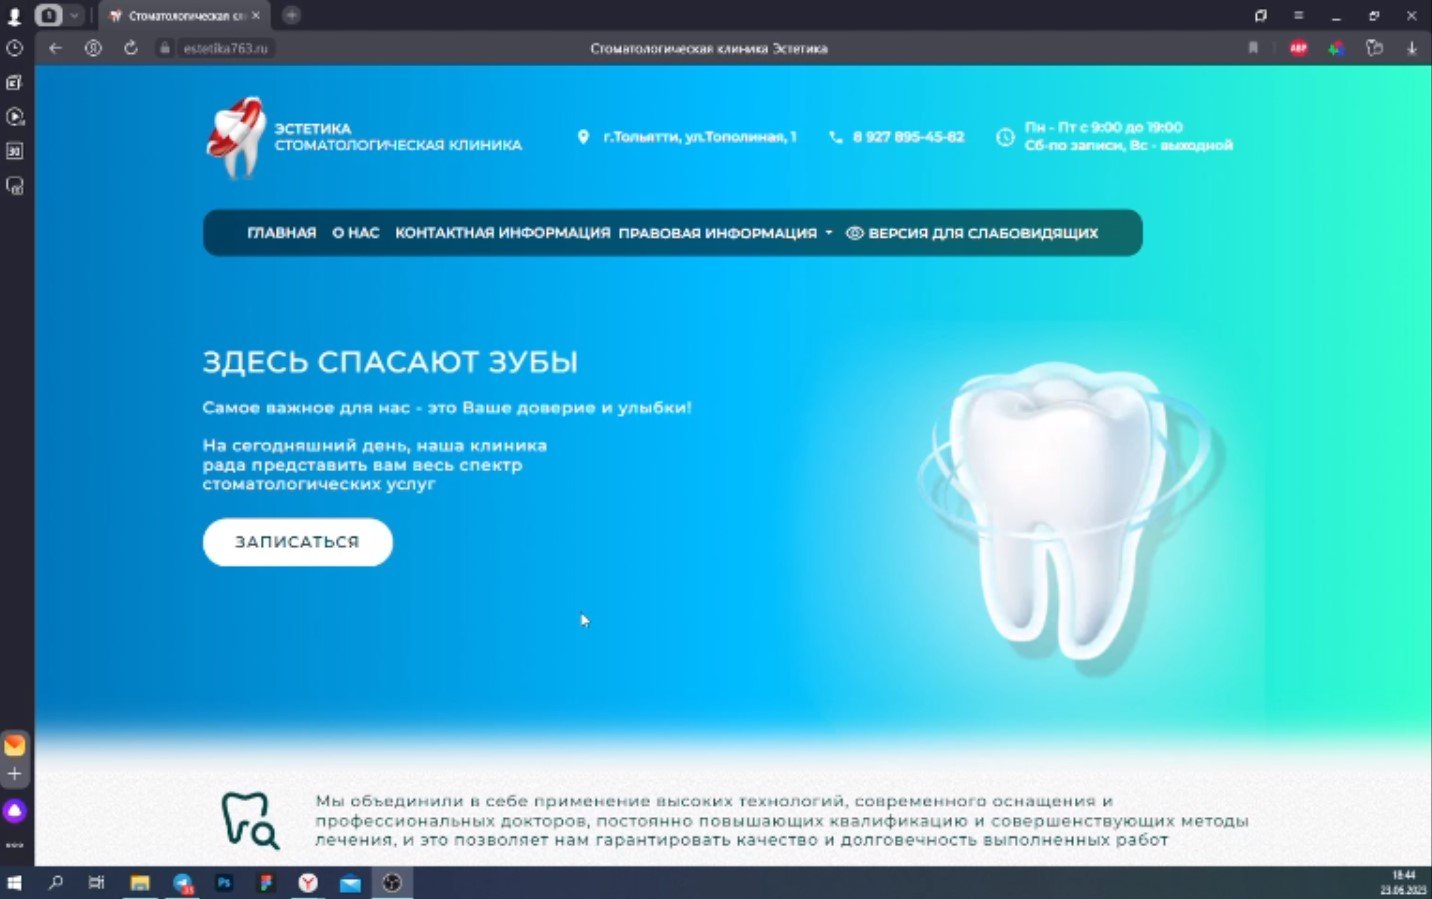 Представляем вашему вниманию, разработанный нами сайт для стоматологической клиники "Эстетика".